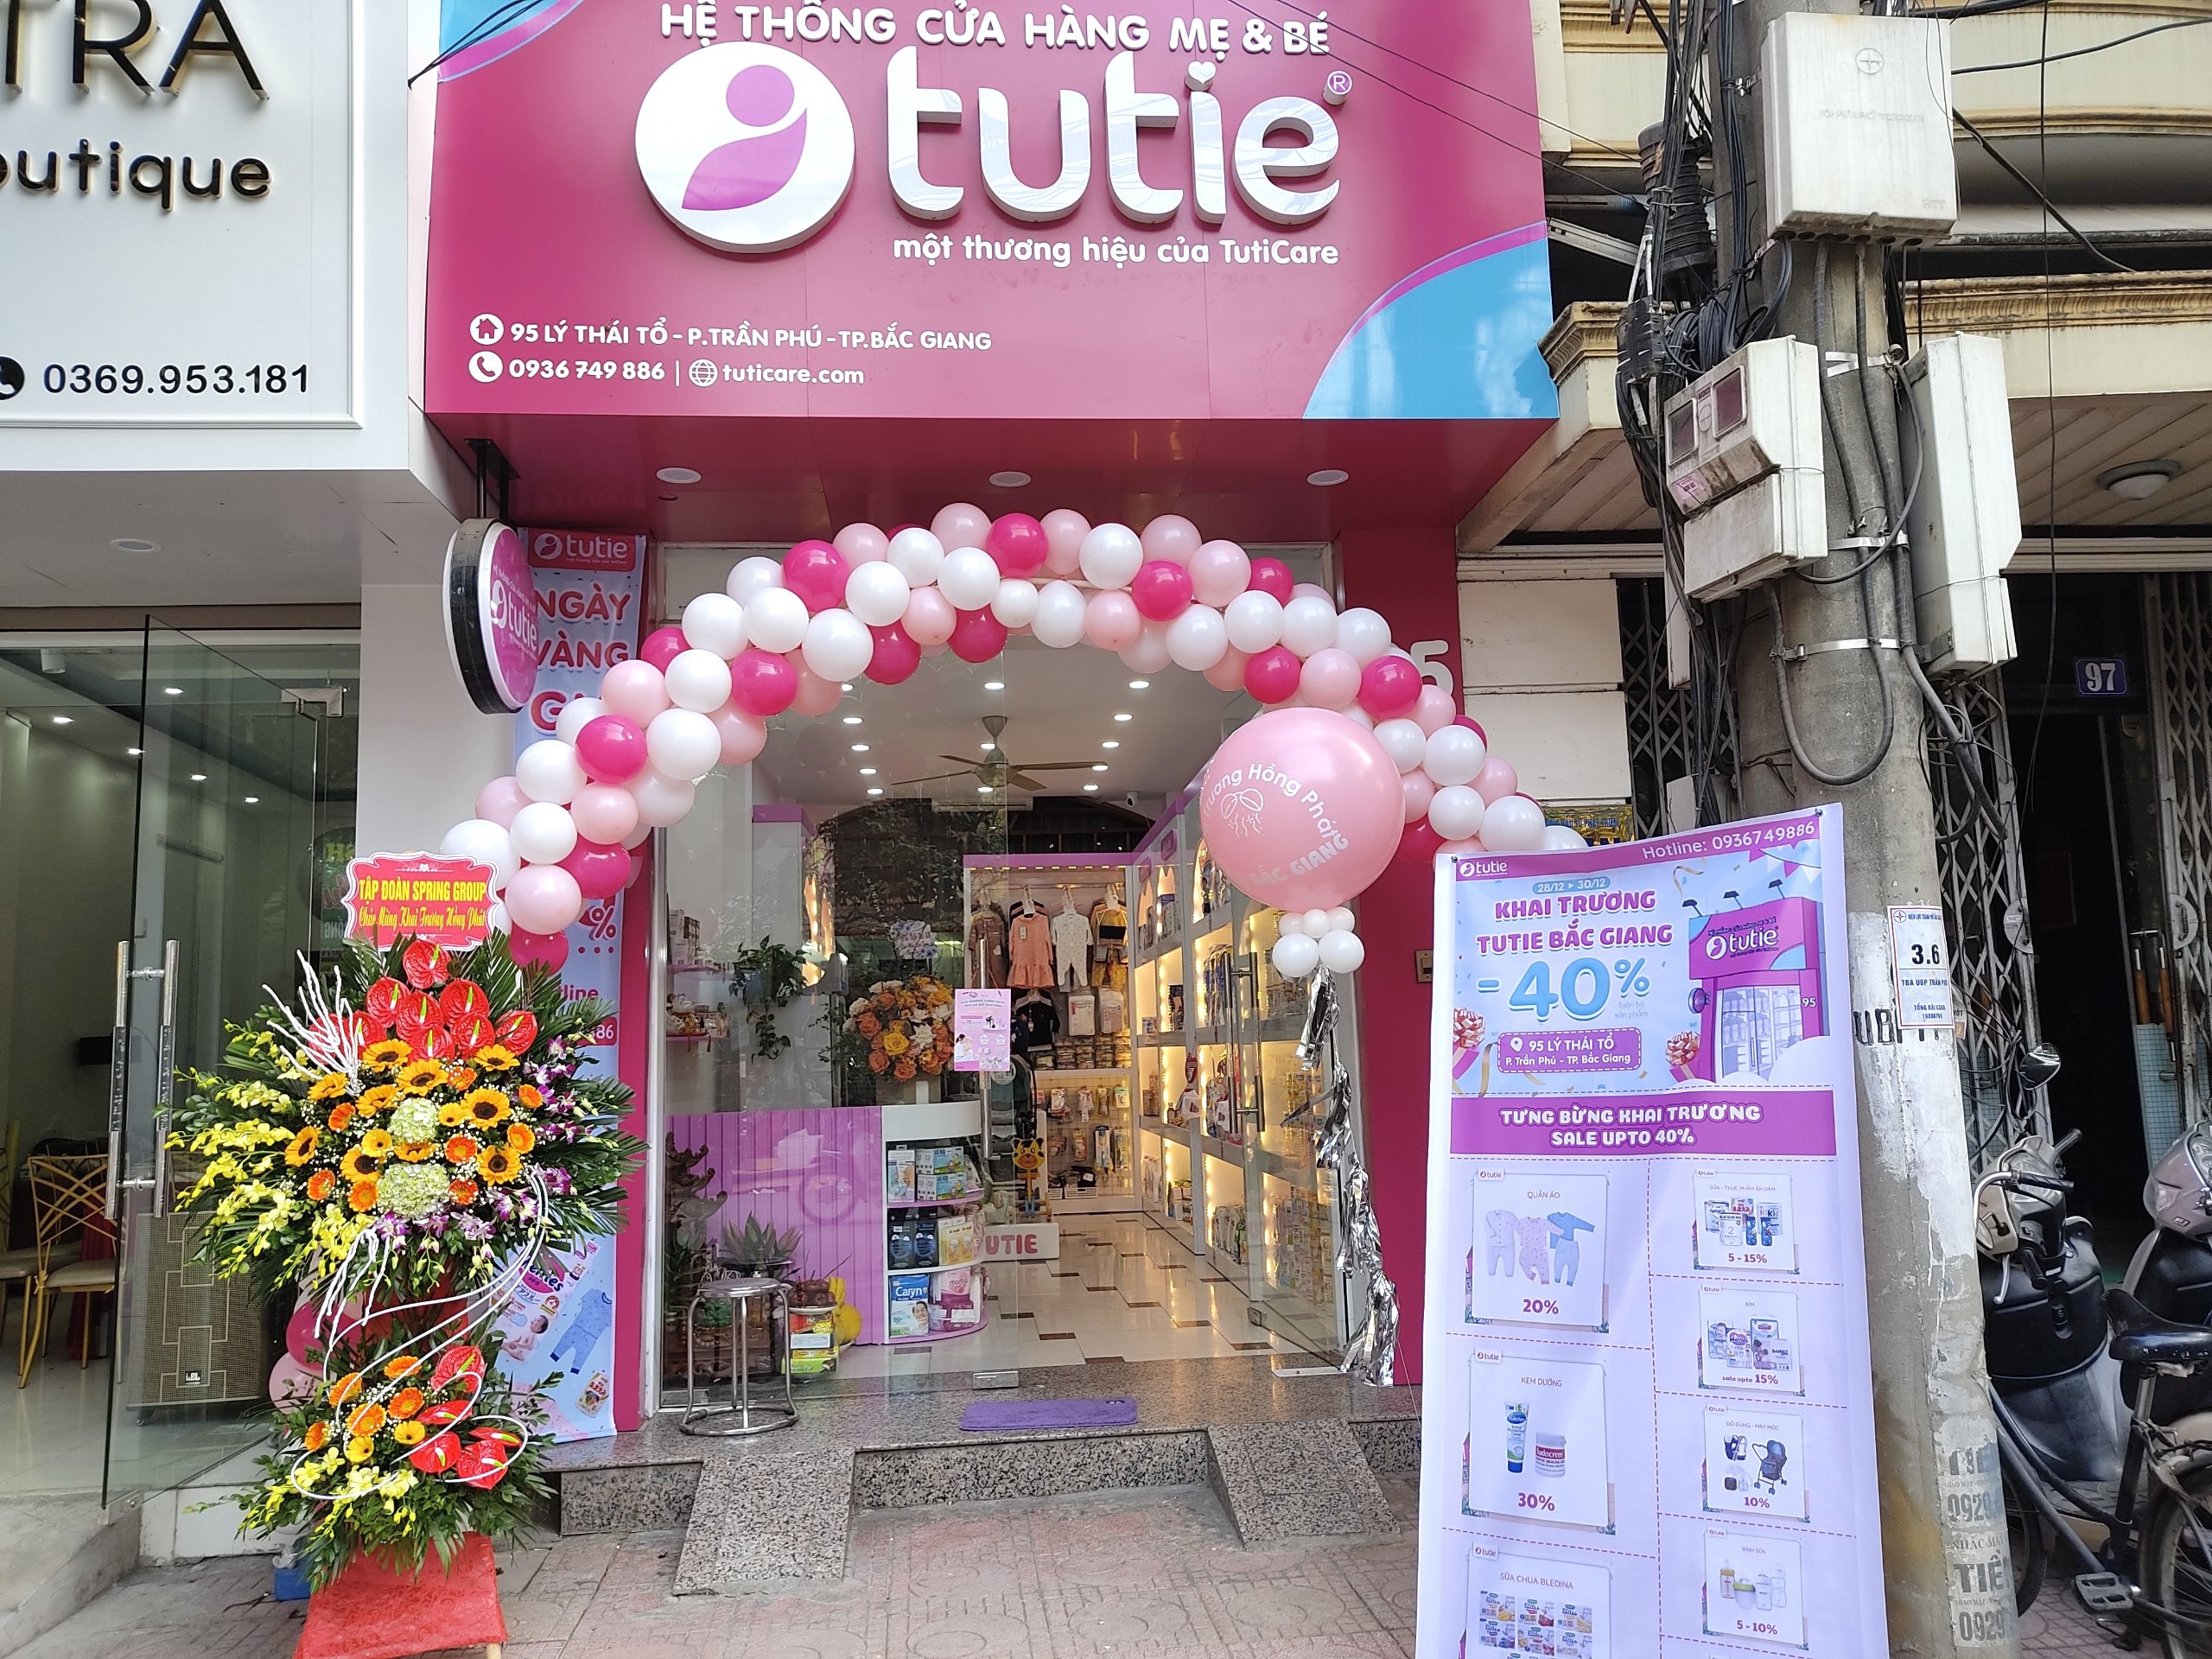 Mừng khai trương cửa hàng Tutie đầu tiên tại Bắc Giang